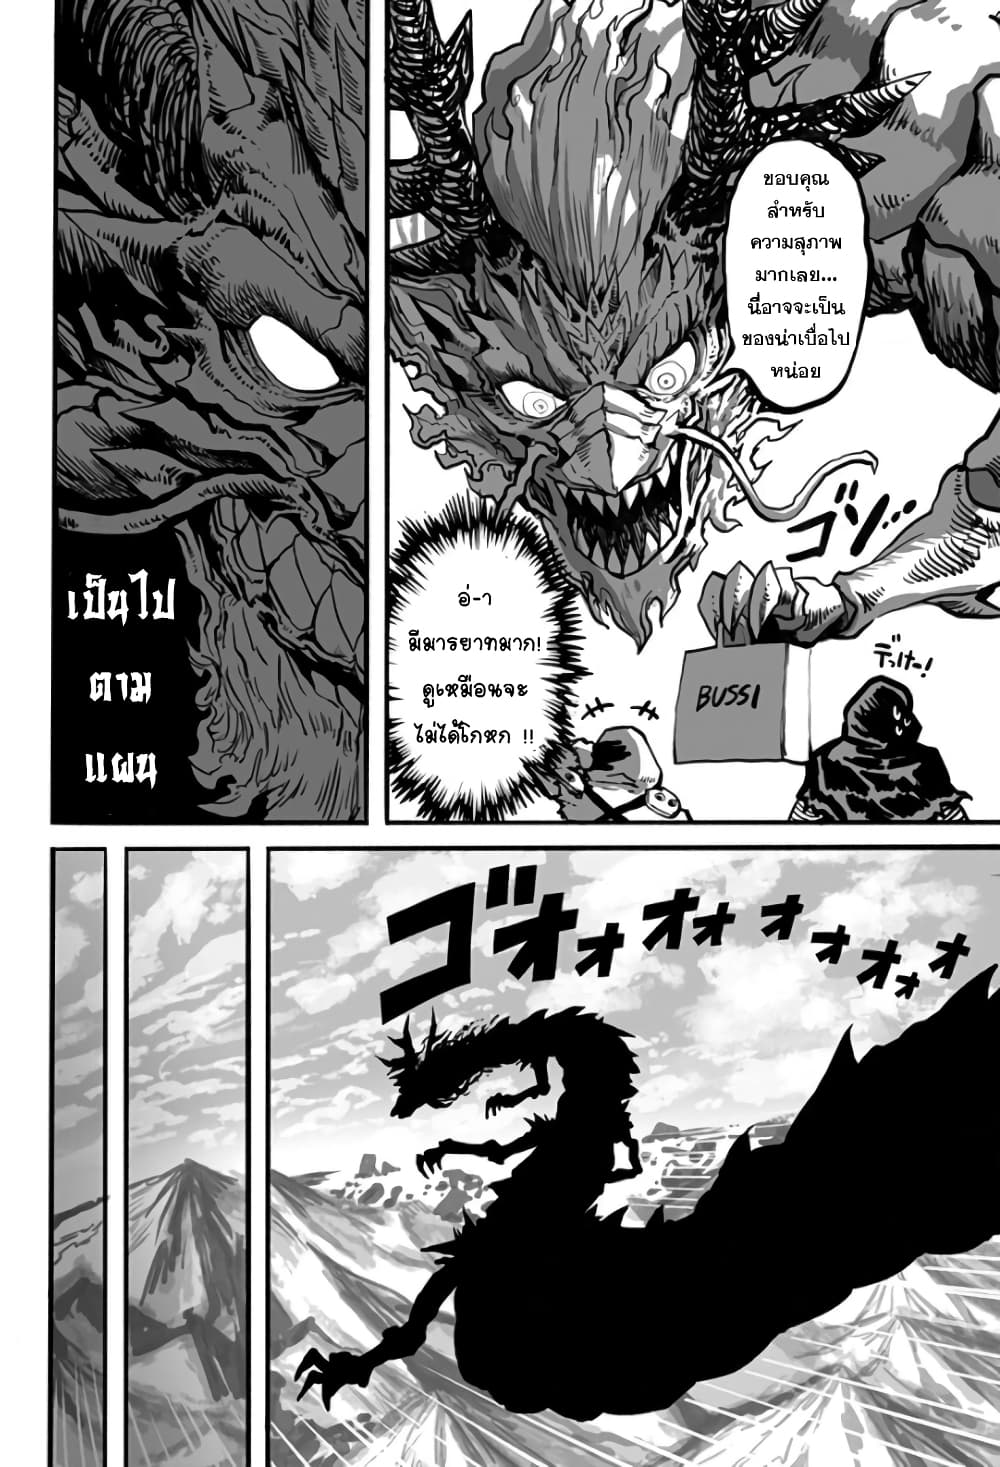 Mutant wa ningen no kanojo to kisu ga shitai 8 (3)